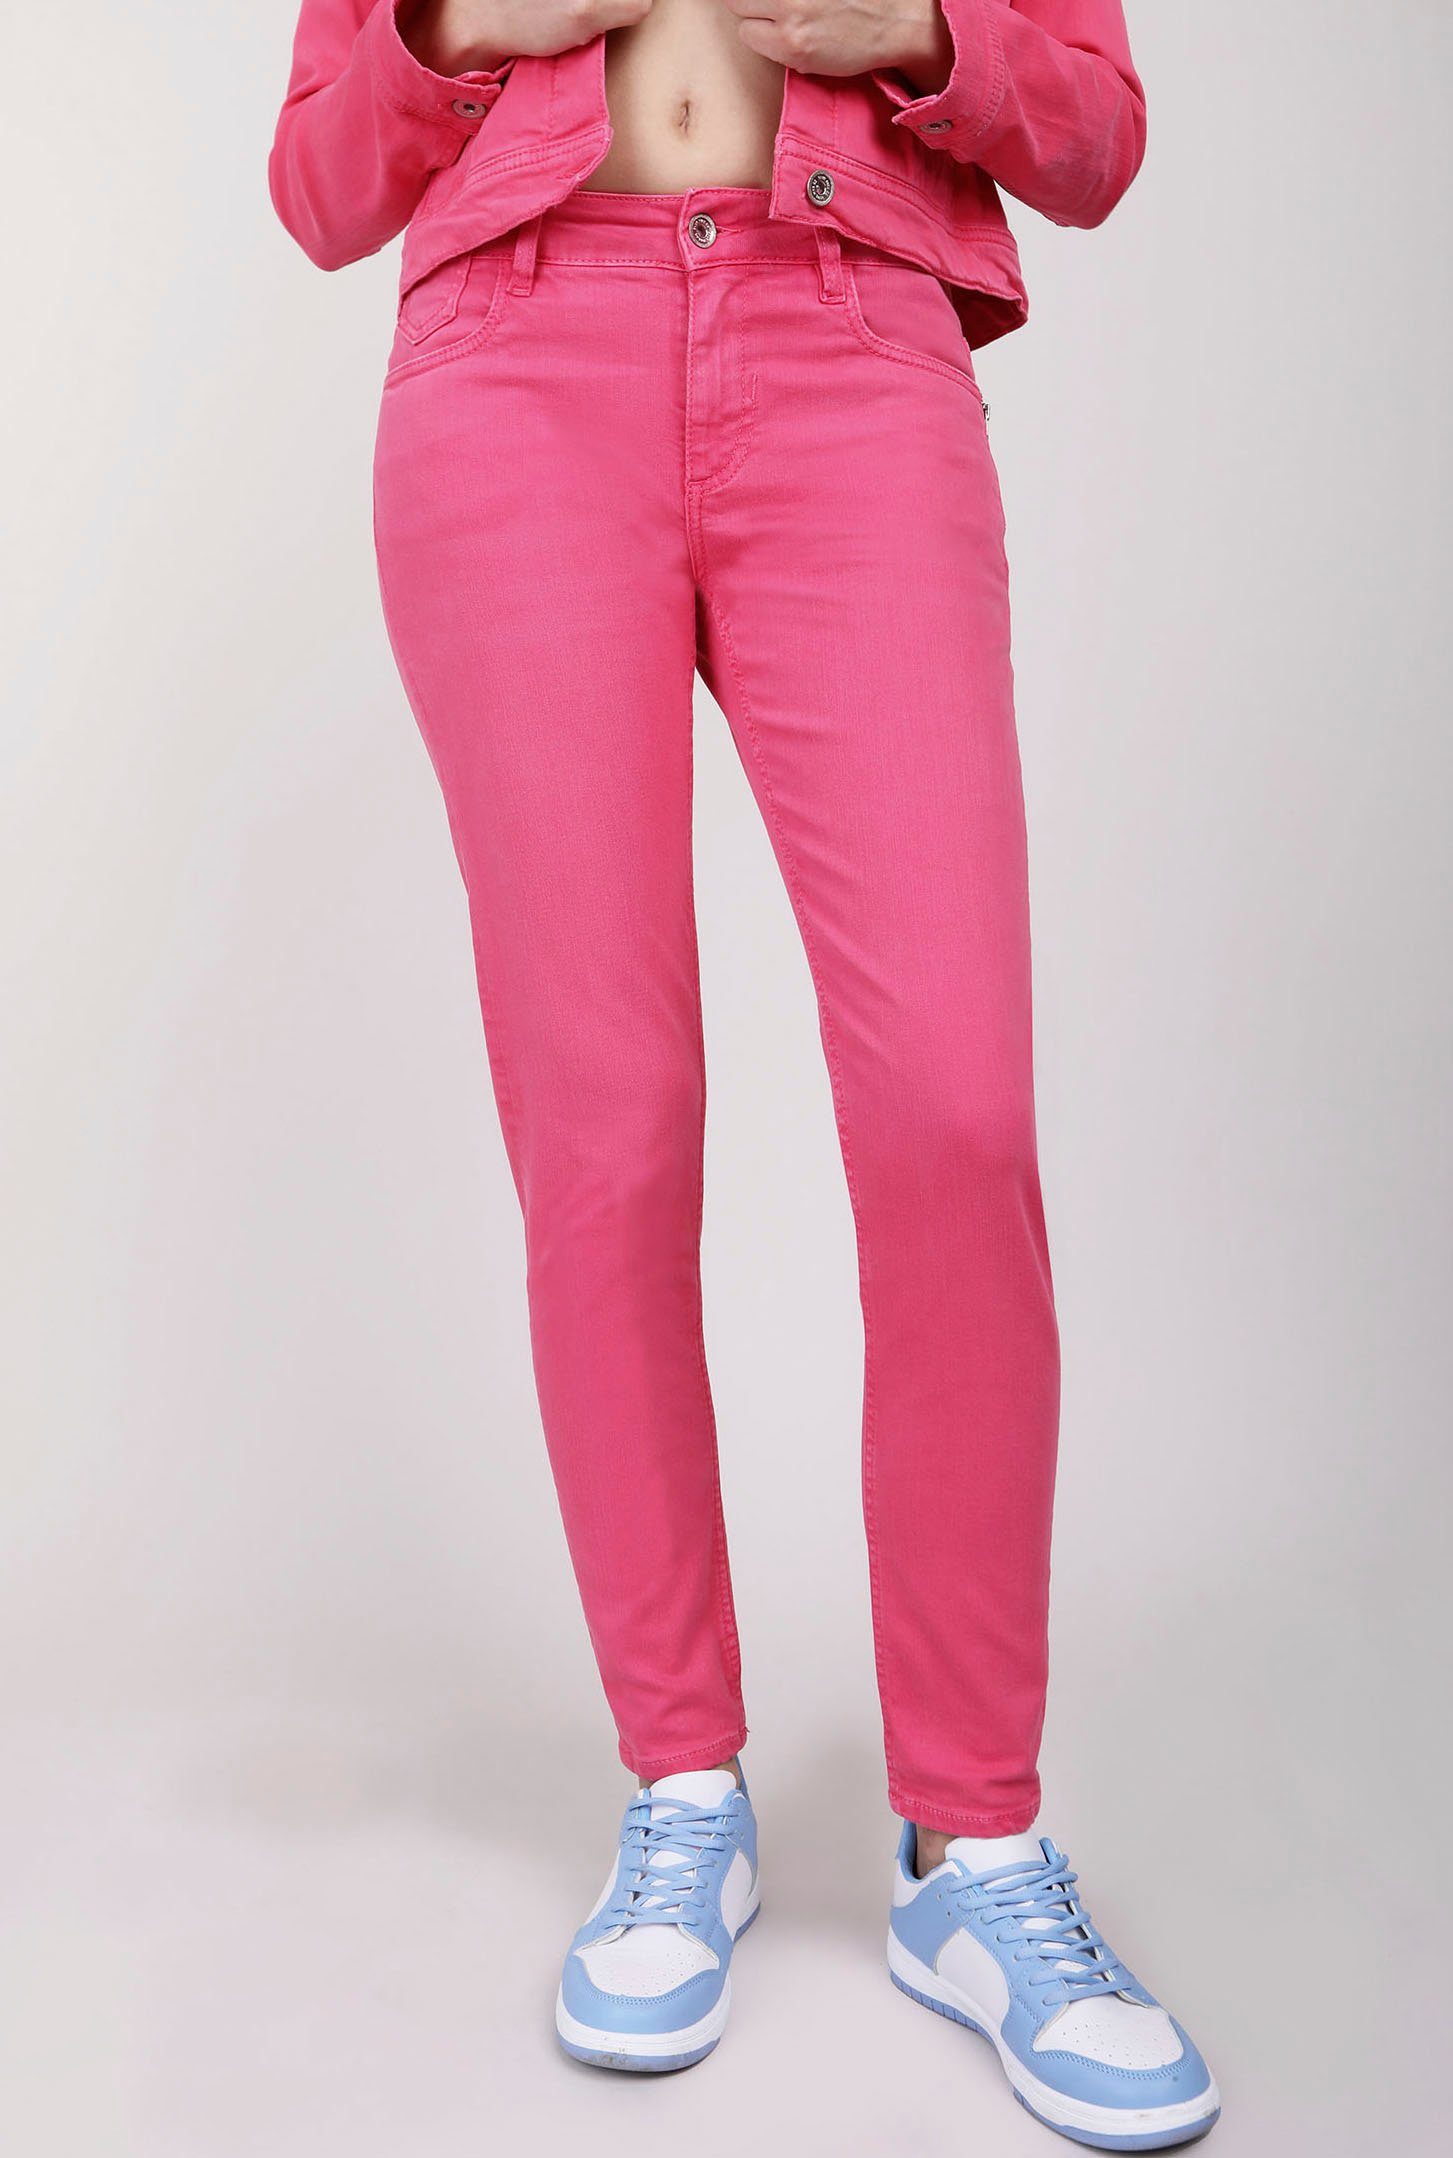 mit BLUE CHLOE an Reißverschluß-Detail Skinny-fit-Jeans FIRE pink der Eingrifftasche